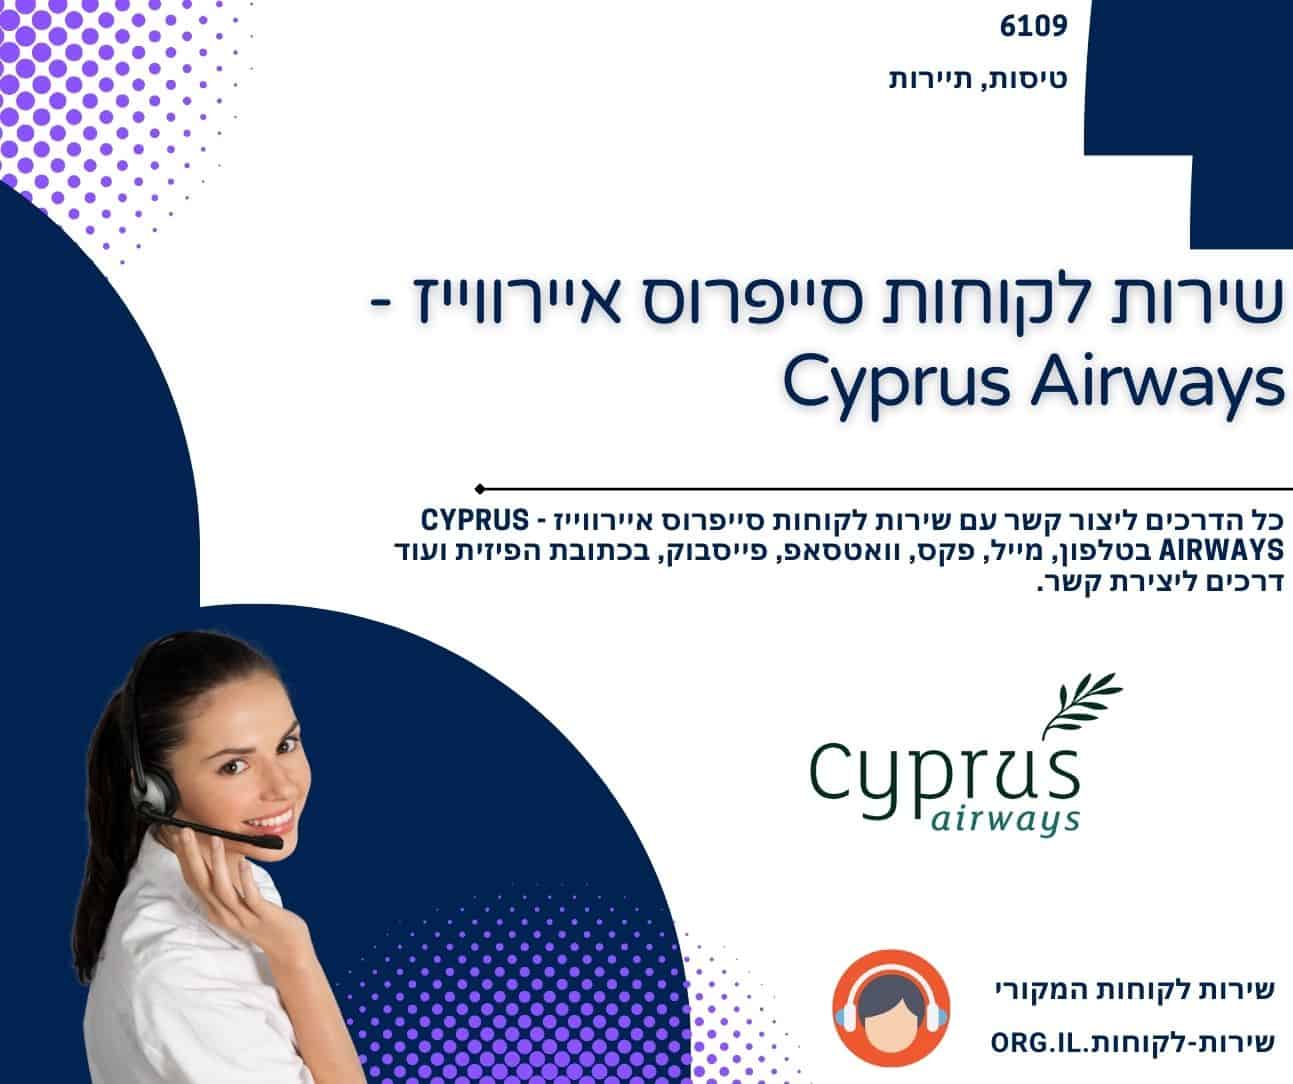 שירות לקוחות סייפרוס איירווייז - Cyprus Airways